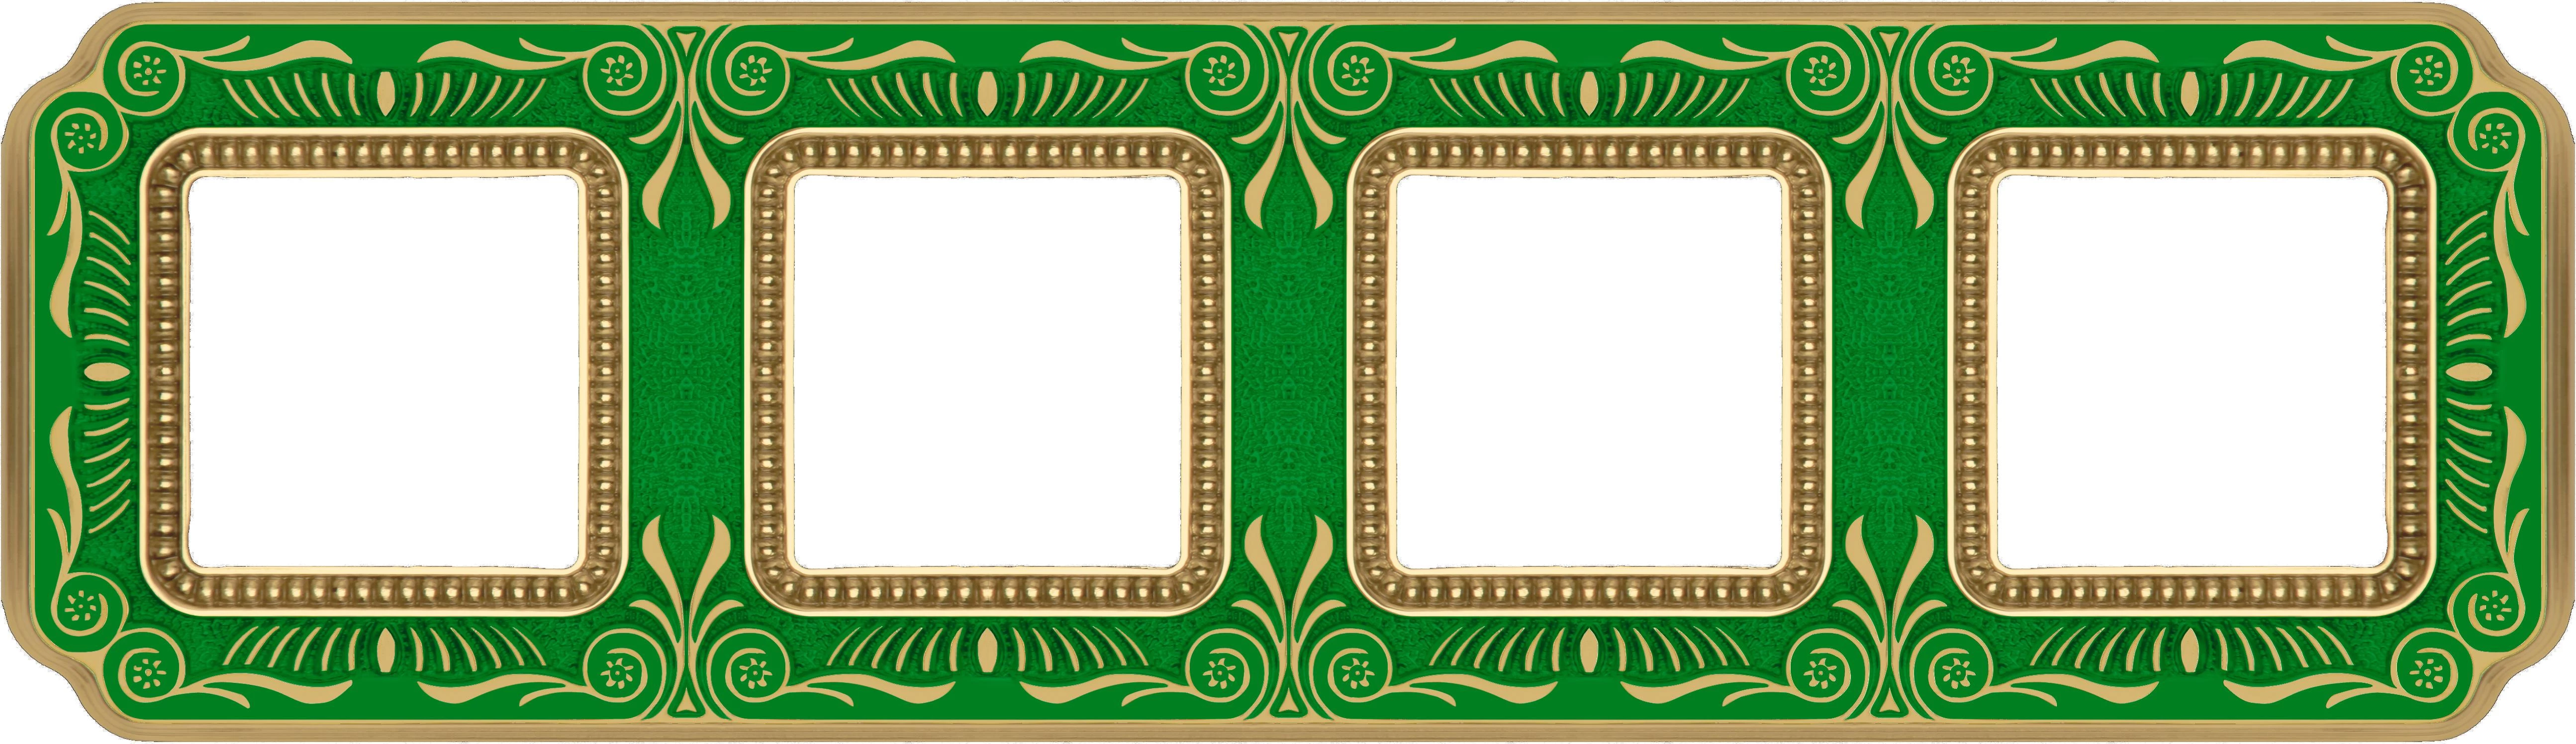  артикул FD01364VEEN название Рамка четверная, цвет Изумрудно-зеленый, Firenze, Fede